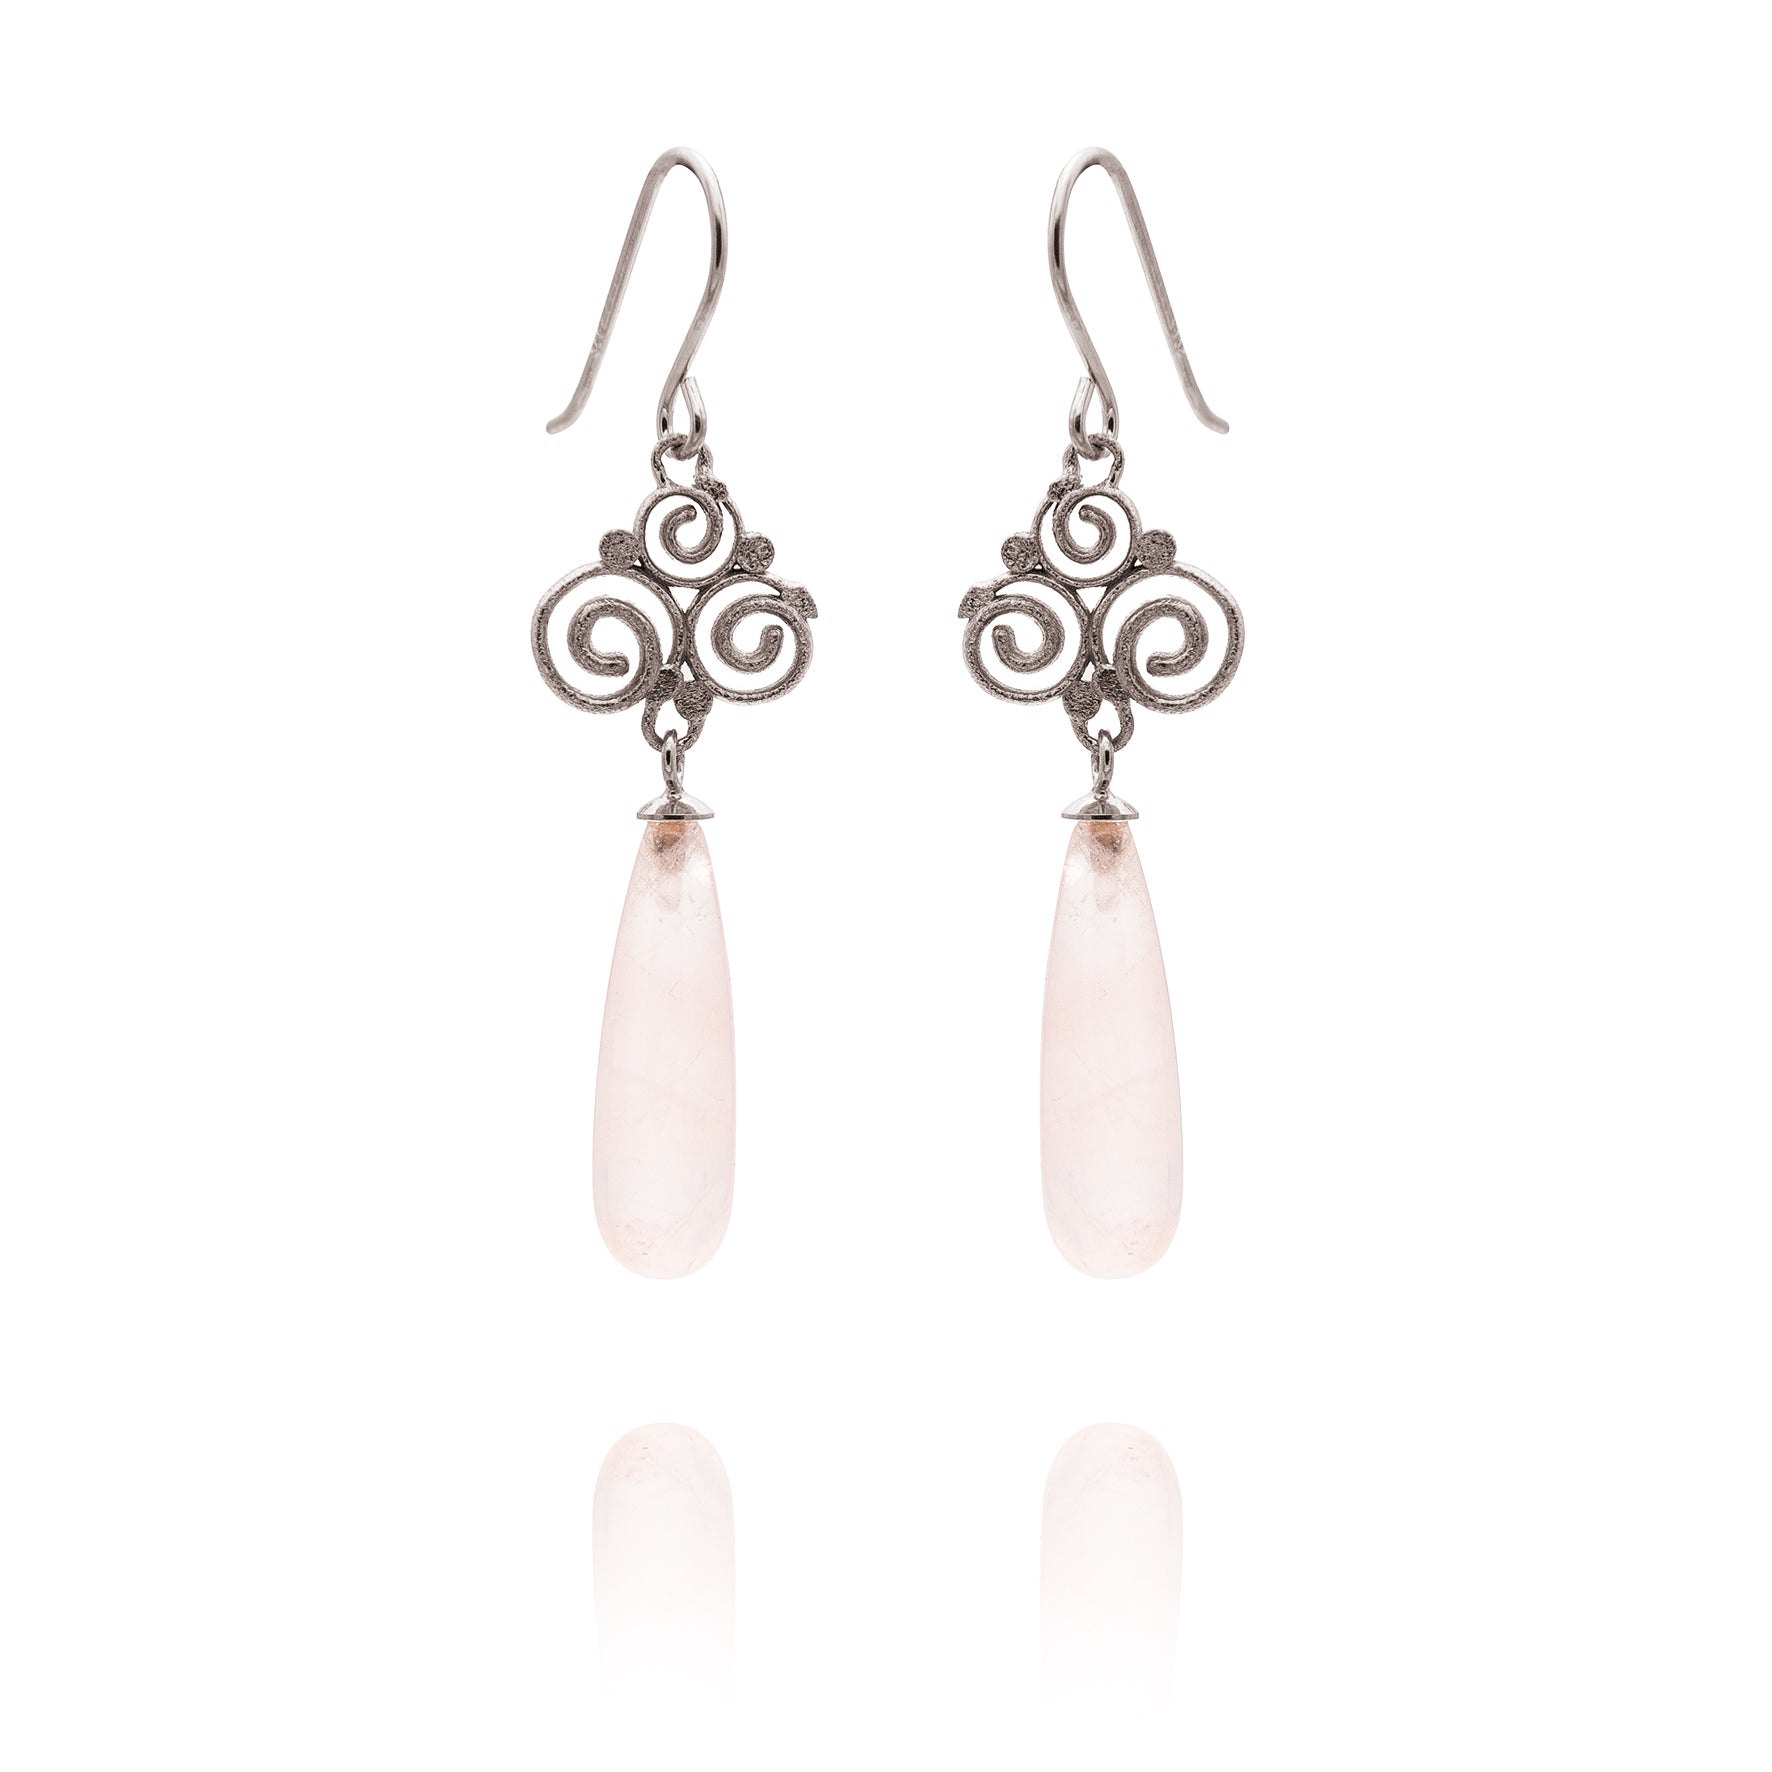 Grace earrings 925/- with rose quartz teardrop